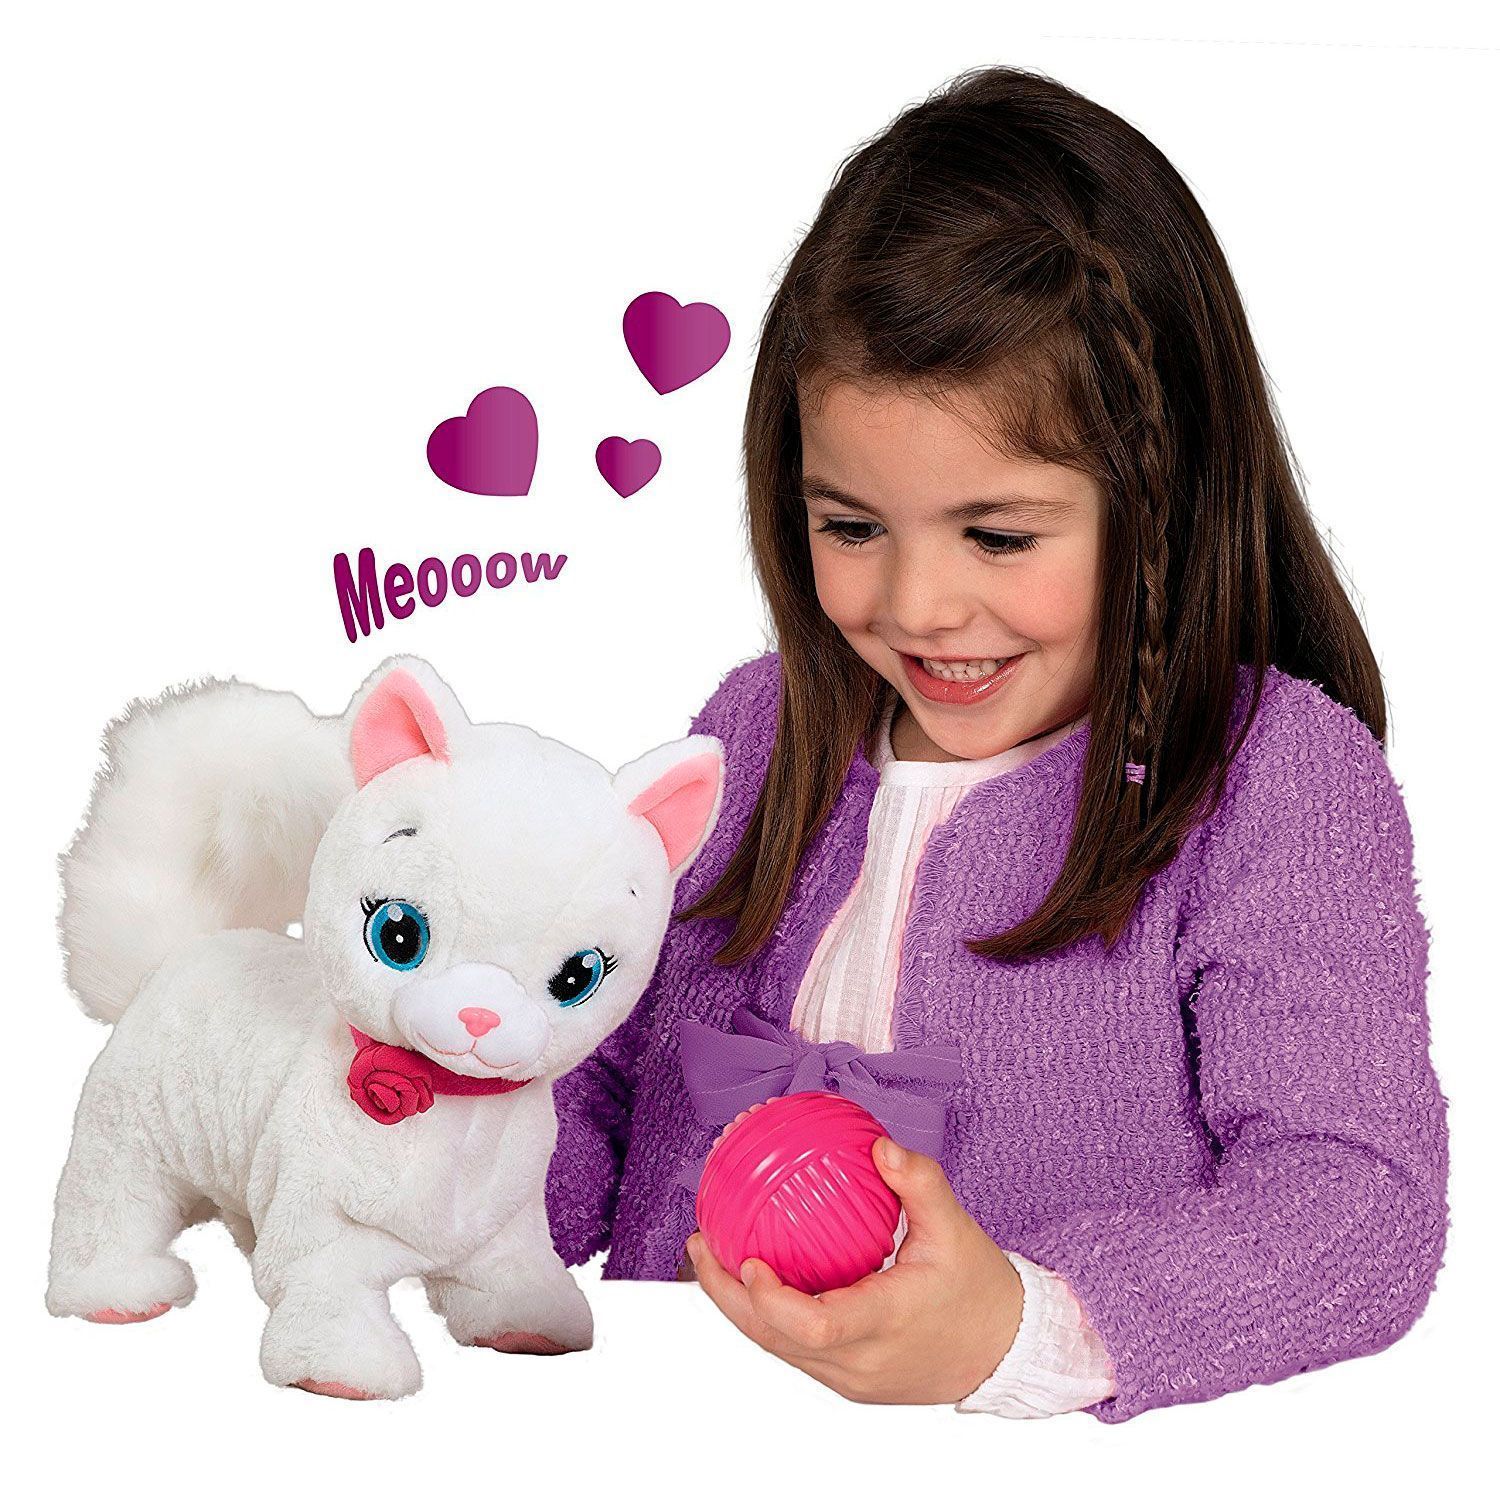 Игрушки нового поколения. Кошечка Бианка интерактивная игрушка. IMC Toys кошка Bianca. Интерактивная кошка Bianca IMC Toys. 95847 Кошка Bianca интерактивная.